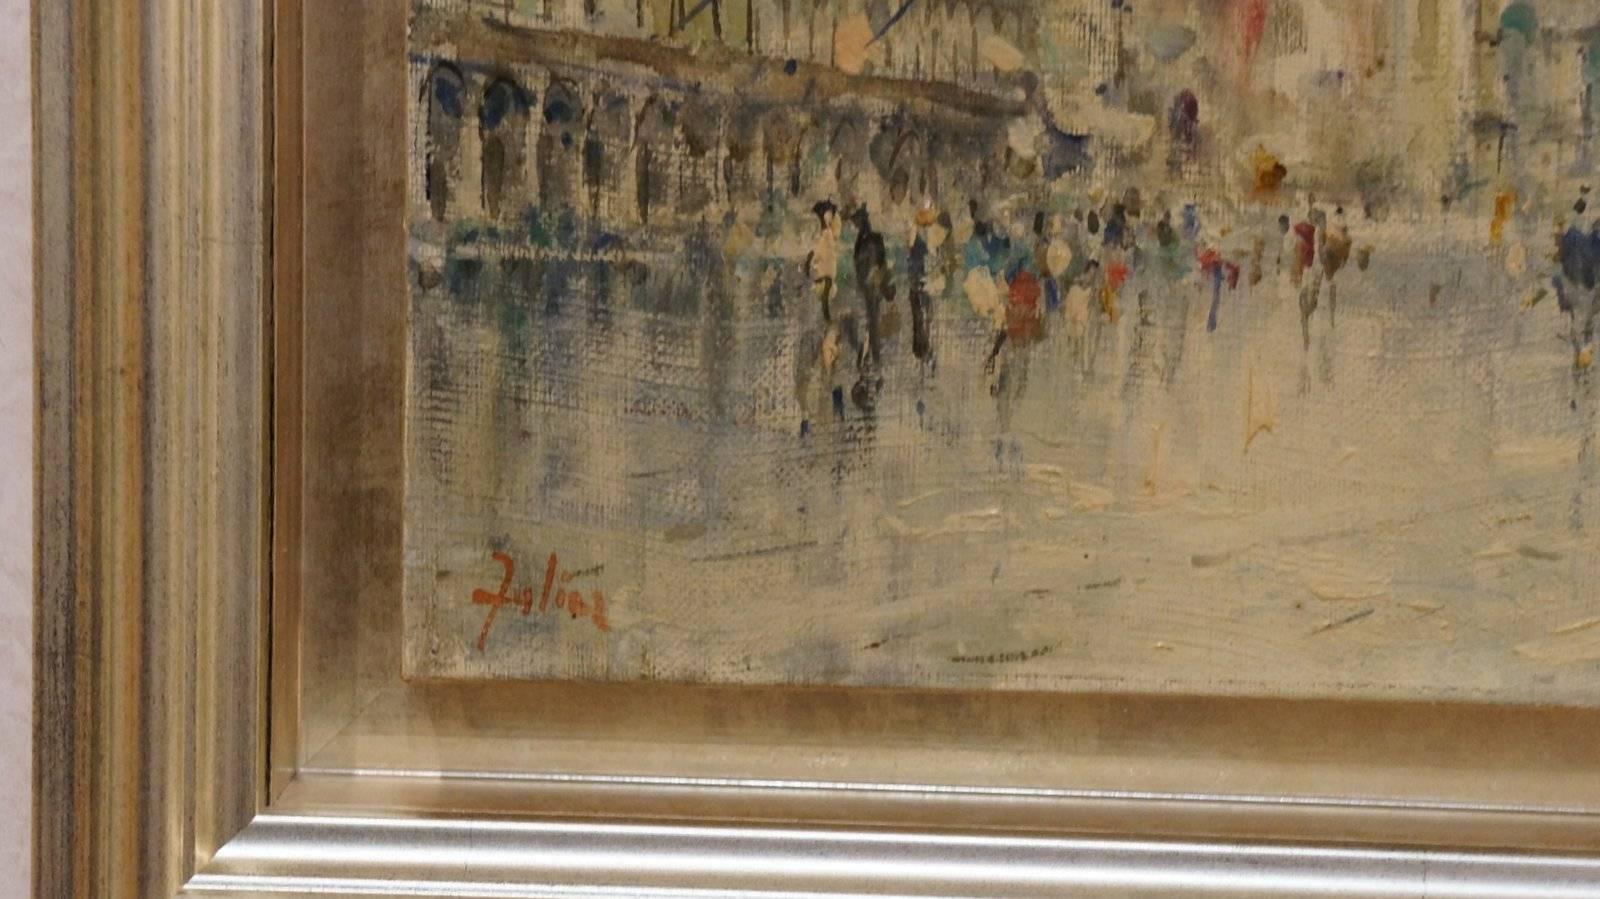 La Place Saint Marc, XIX c. - oil paint, 24x35 cm, framed. - Painting by Unknown